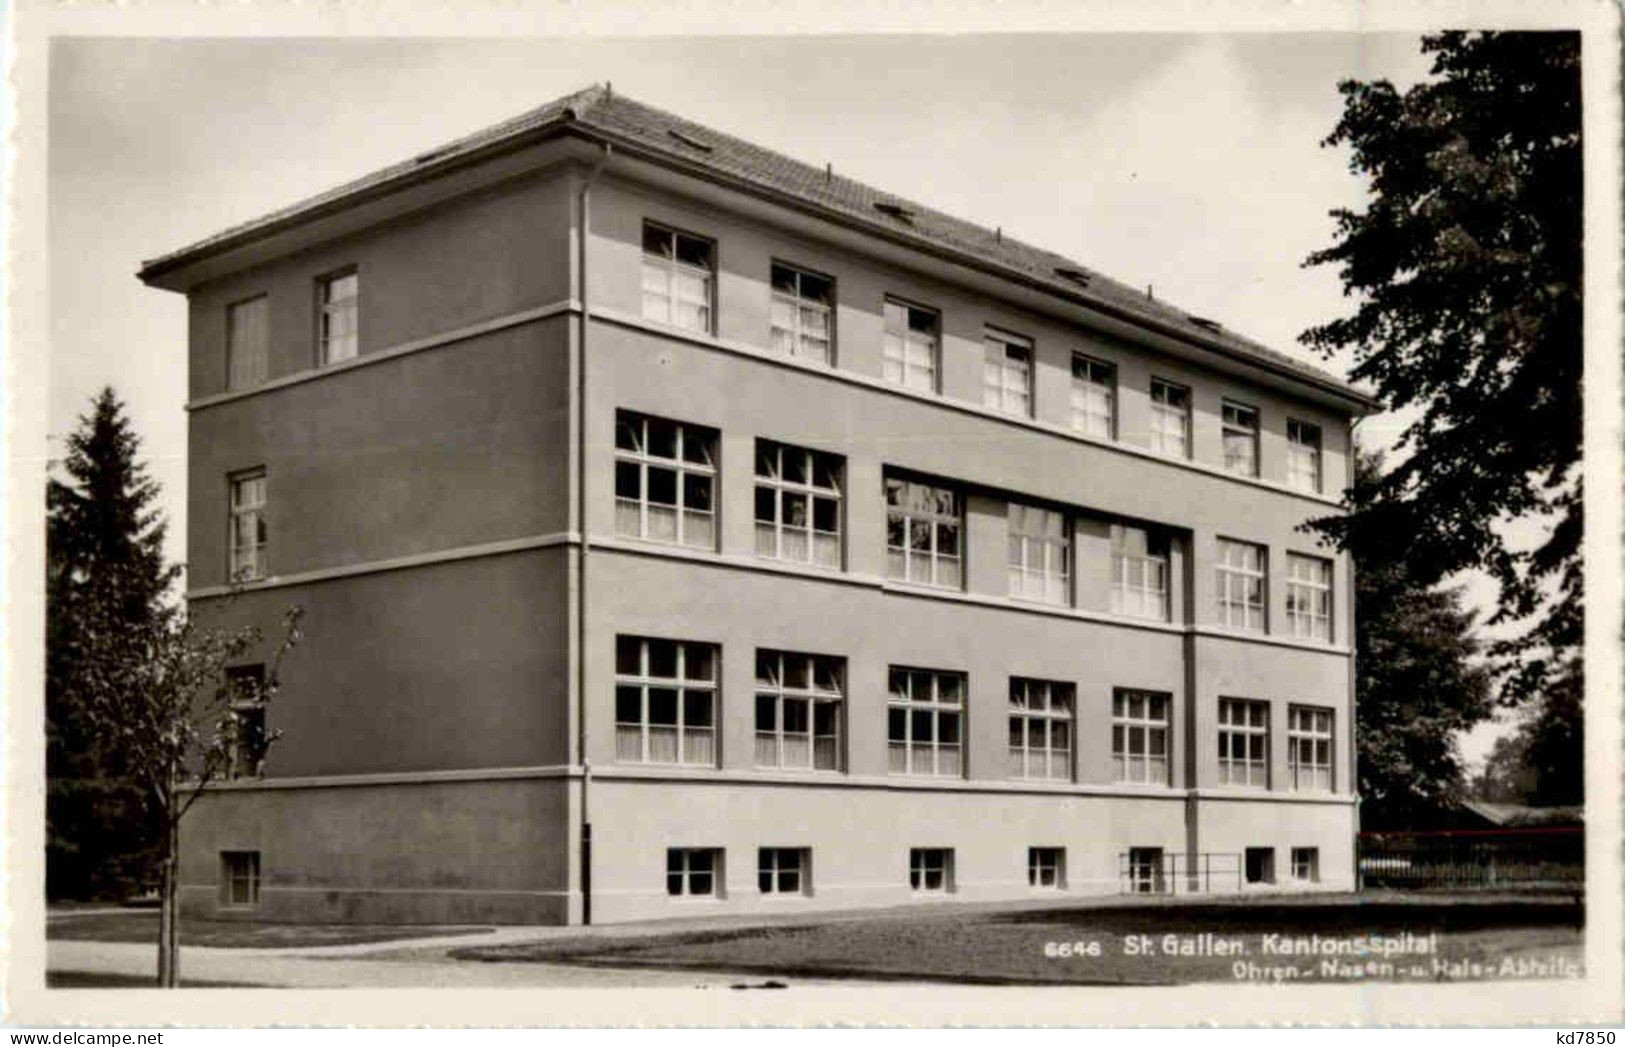 St. Gallen - Kantonsspital - San Galo